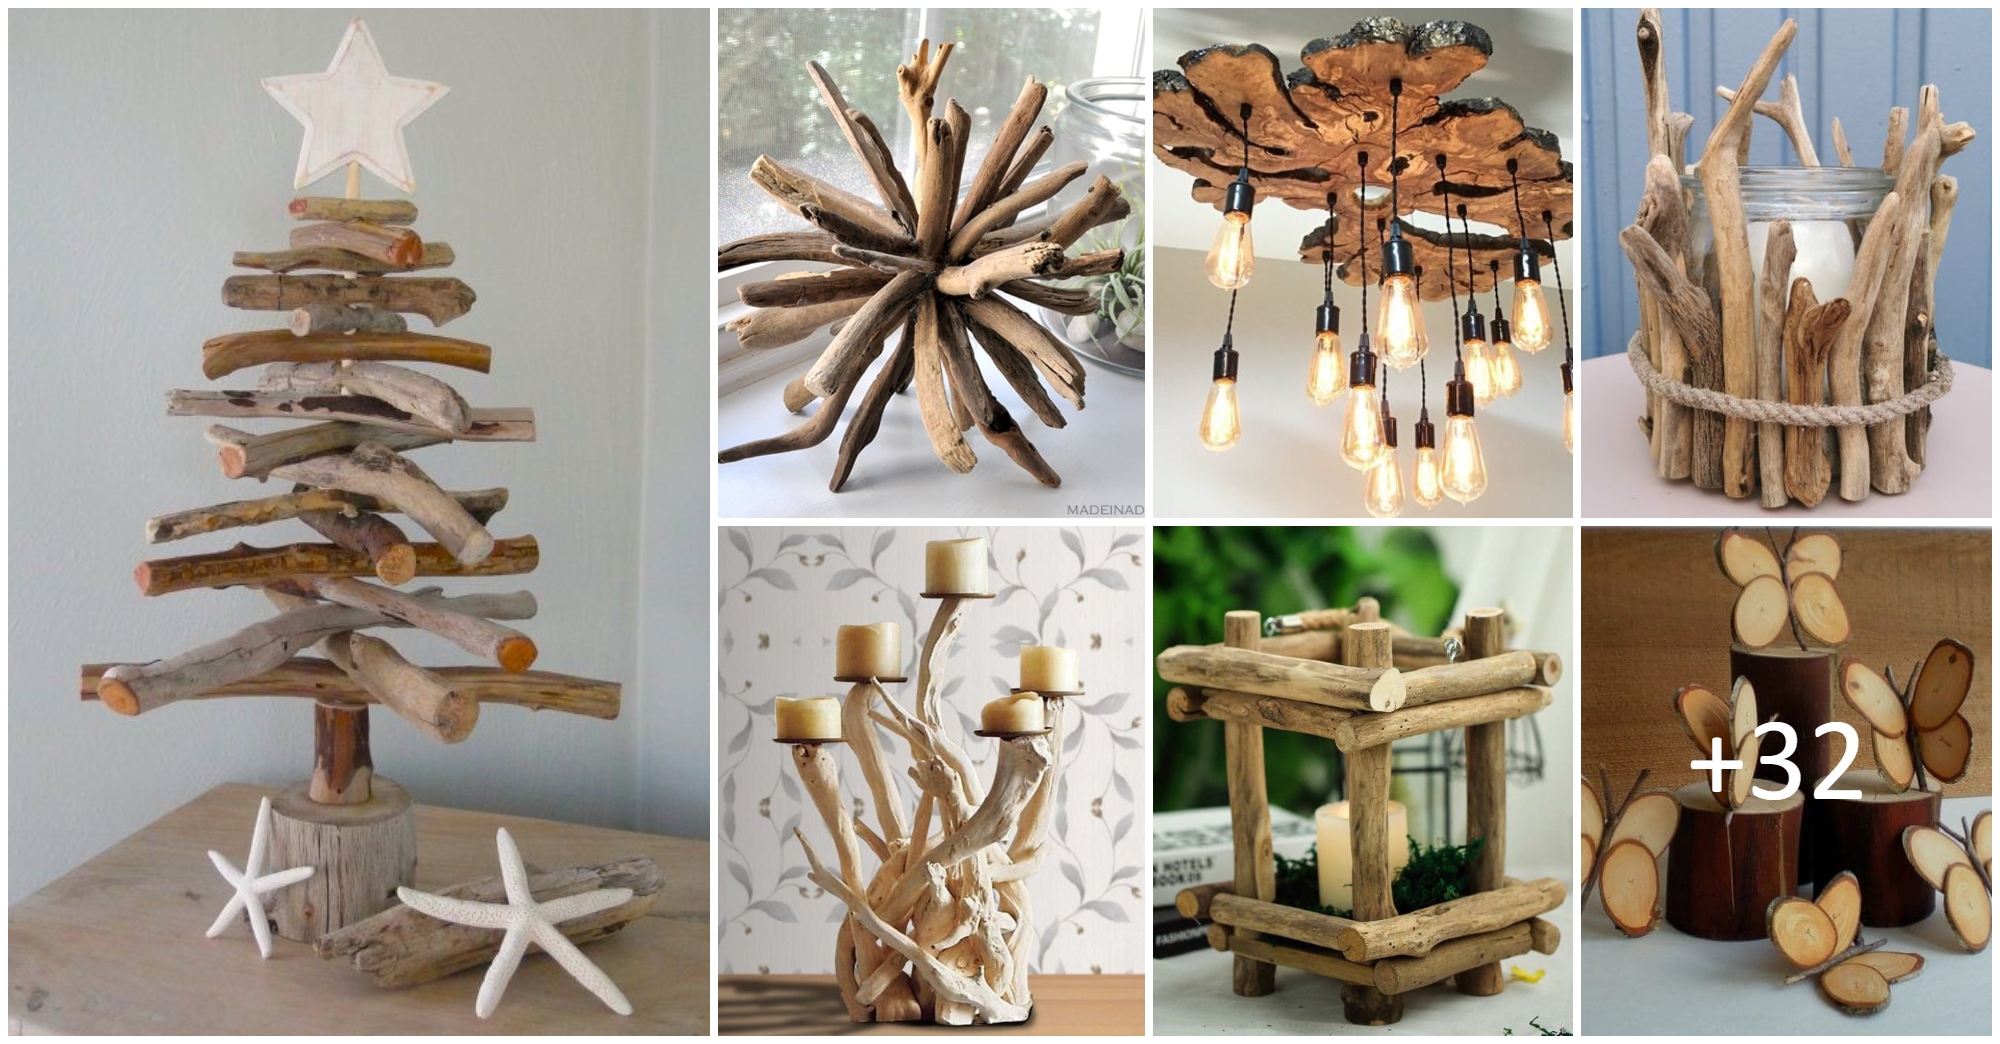 Amazing wood craft ideas